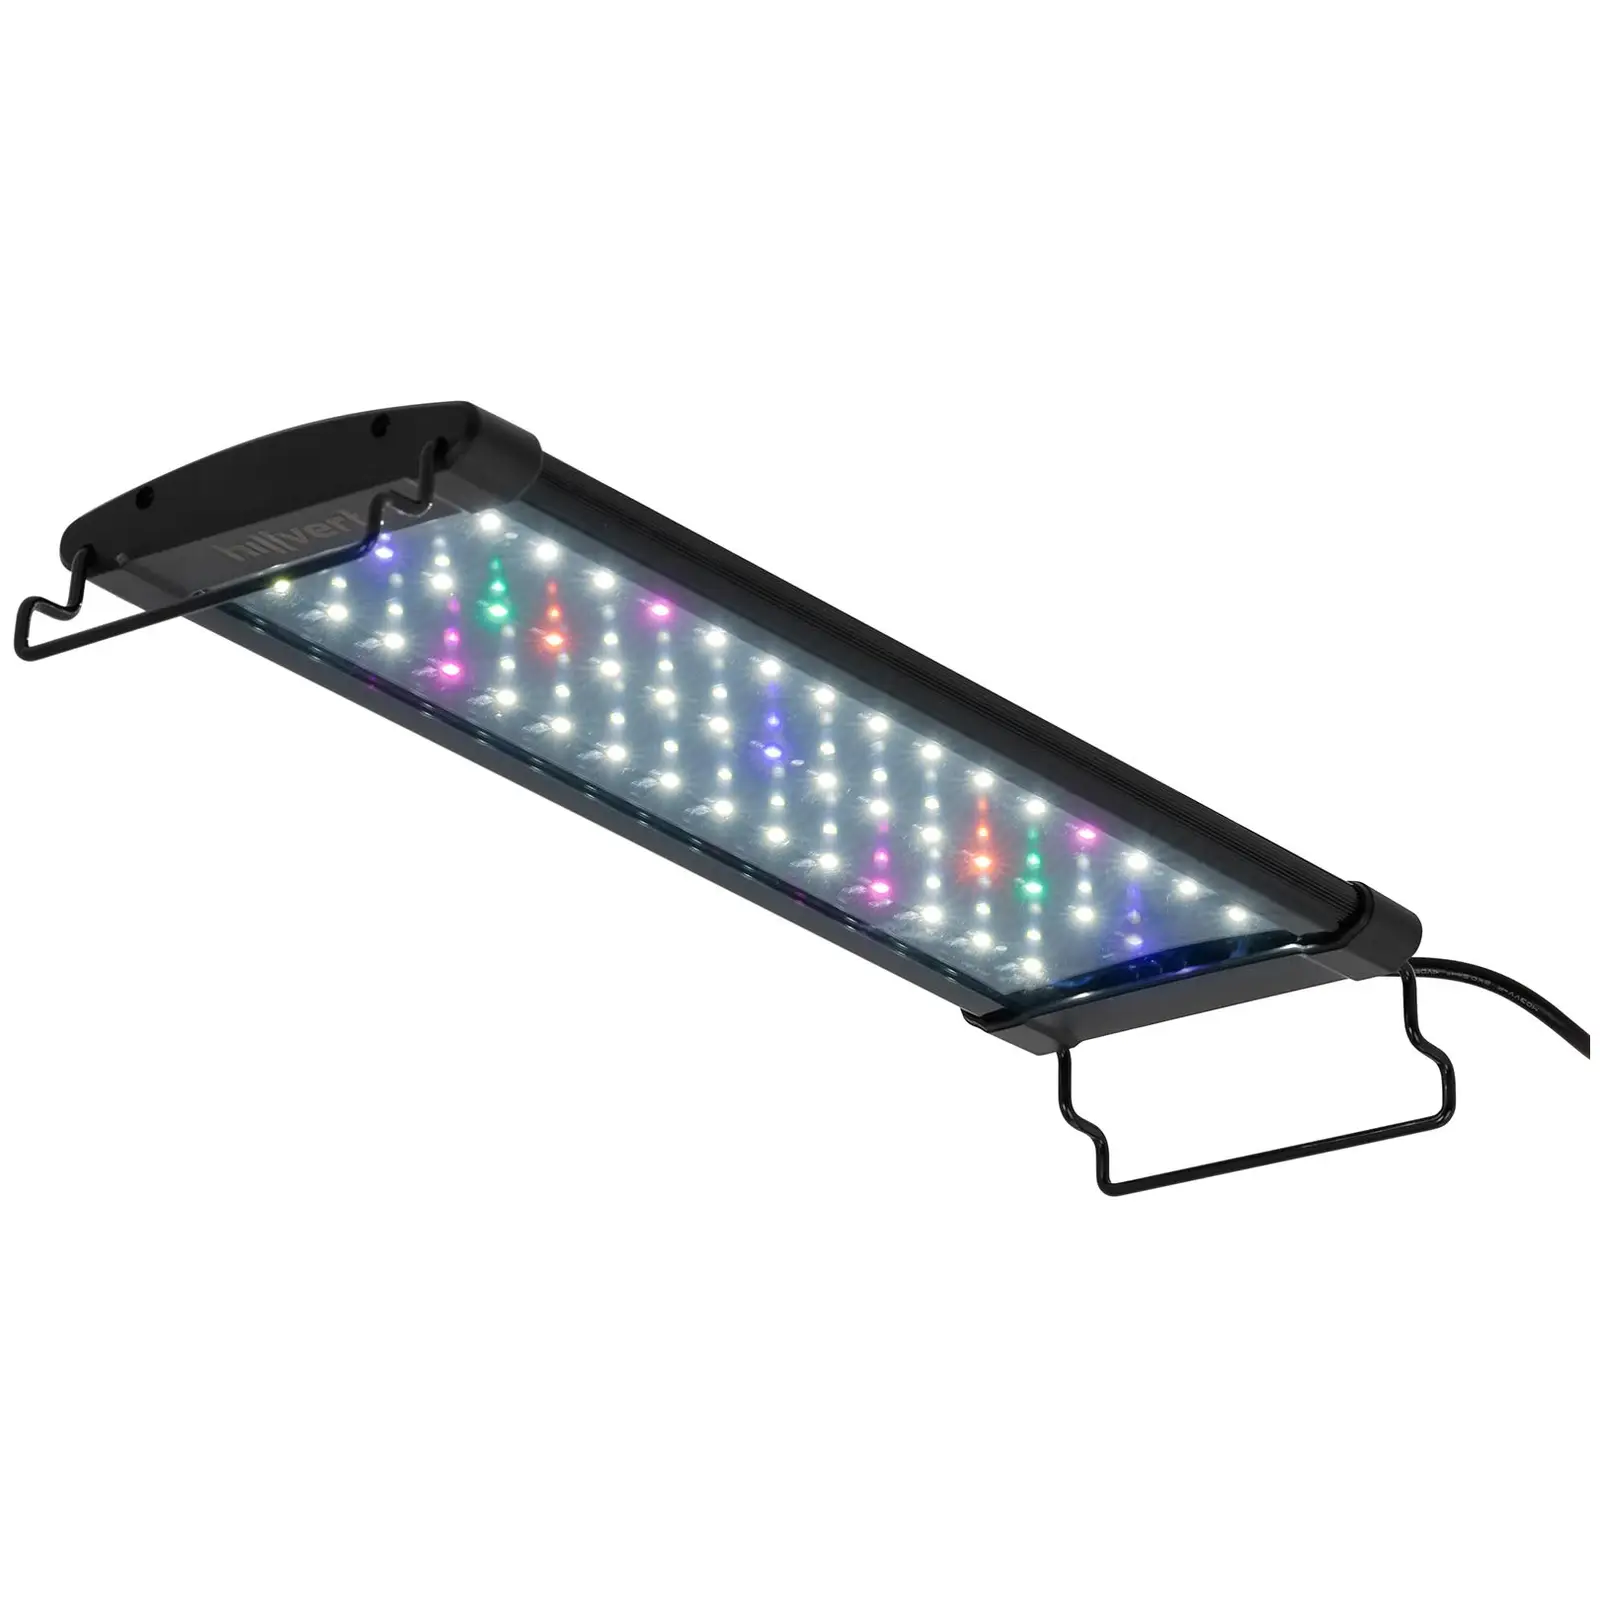 LED svjetlo za akvarij - 45 LED diode - 12 W - 36 cm